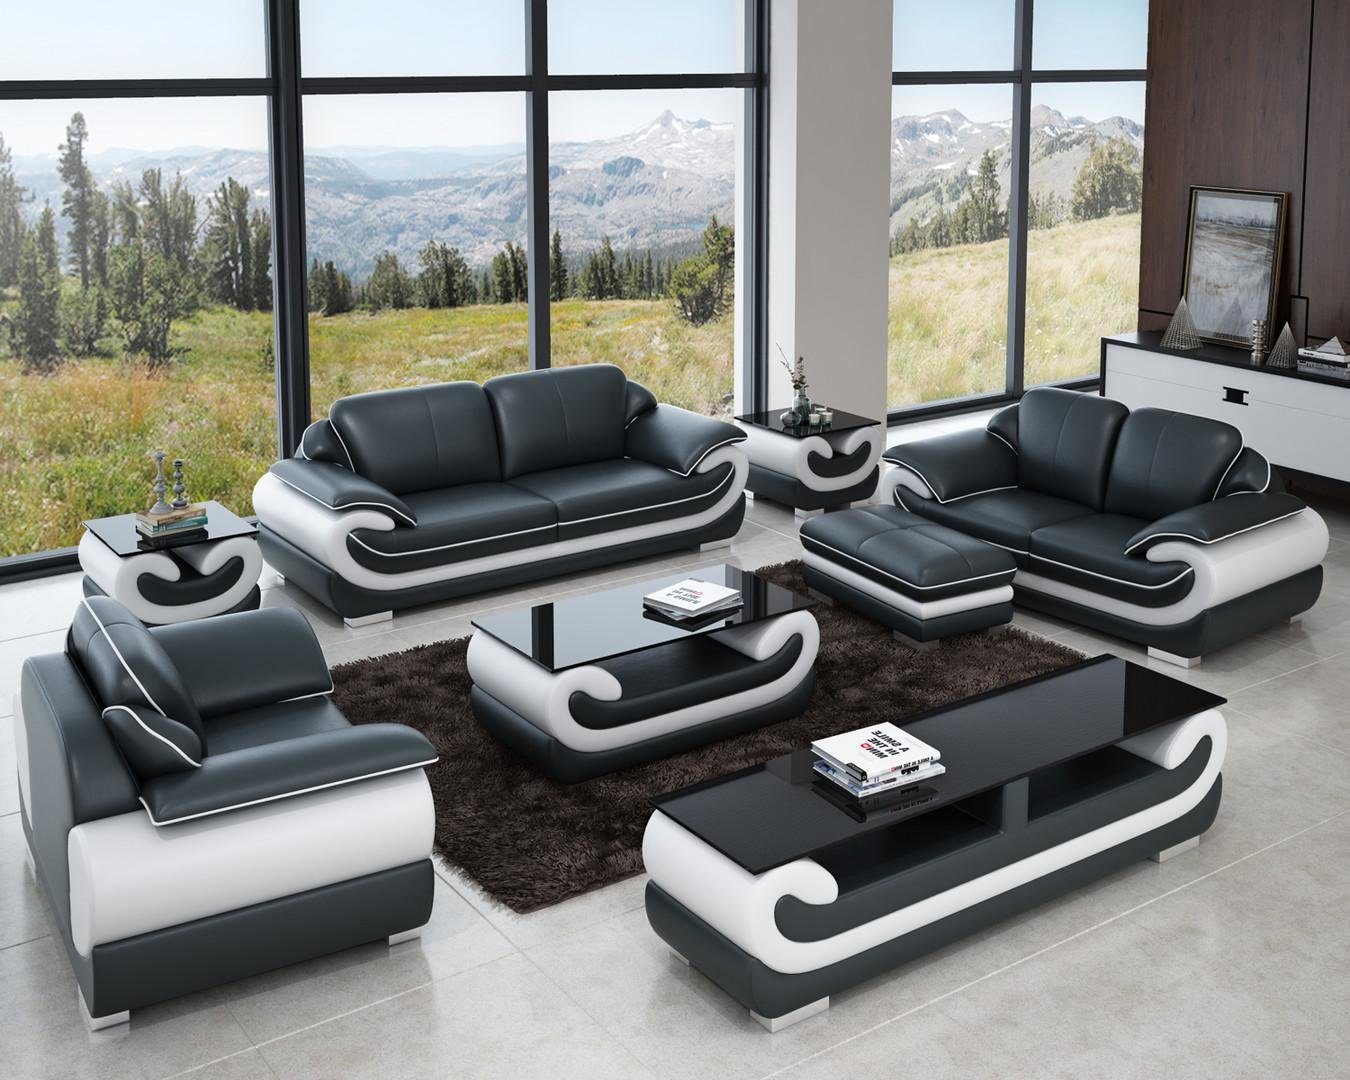 JVmoebel Wohnlandschaft Grau/Weiß Sofa Ledersofa in Garnitur Sitzer Couch Made Design, 3+1+1 Europe